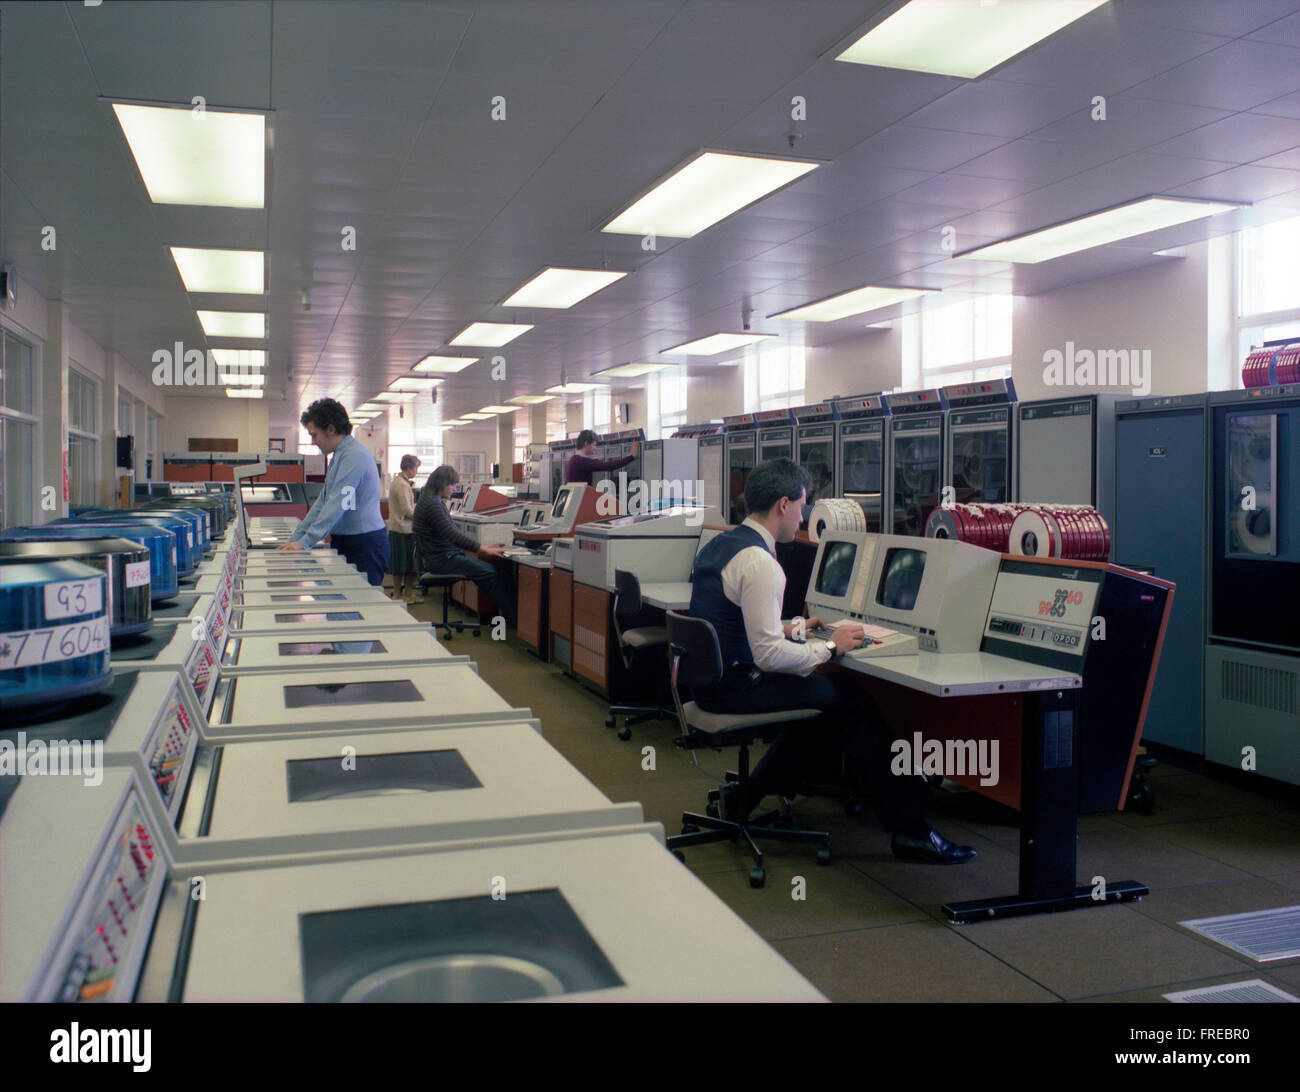 El ICL 2960 sistema de computadora central en el Milk Marketing Board, Thames Ditton c1985 Foto de stock